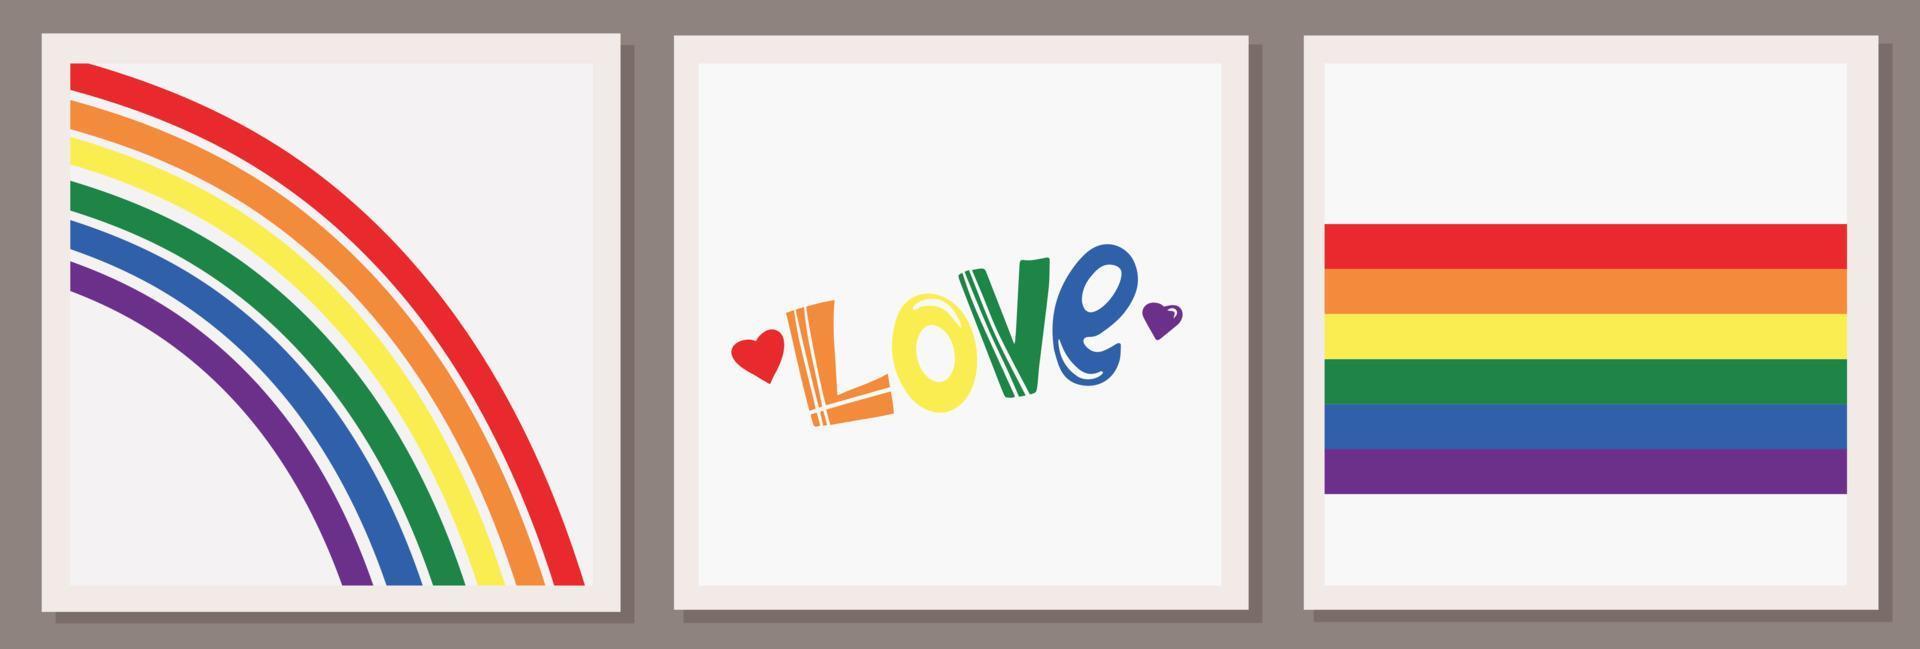 ensemble de trois illustrations vectorielles de la communauté lgbt. coeur, arc-en-ciel et drapeau. inscription d'amour. symboles et couleurs lgbtq. les droits de l'homme et la tolérance. joyeux mois de la fierté. vecteur